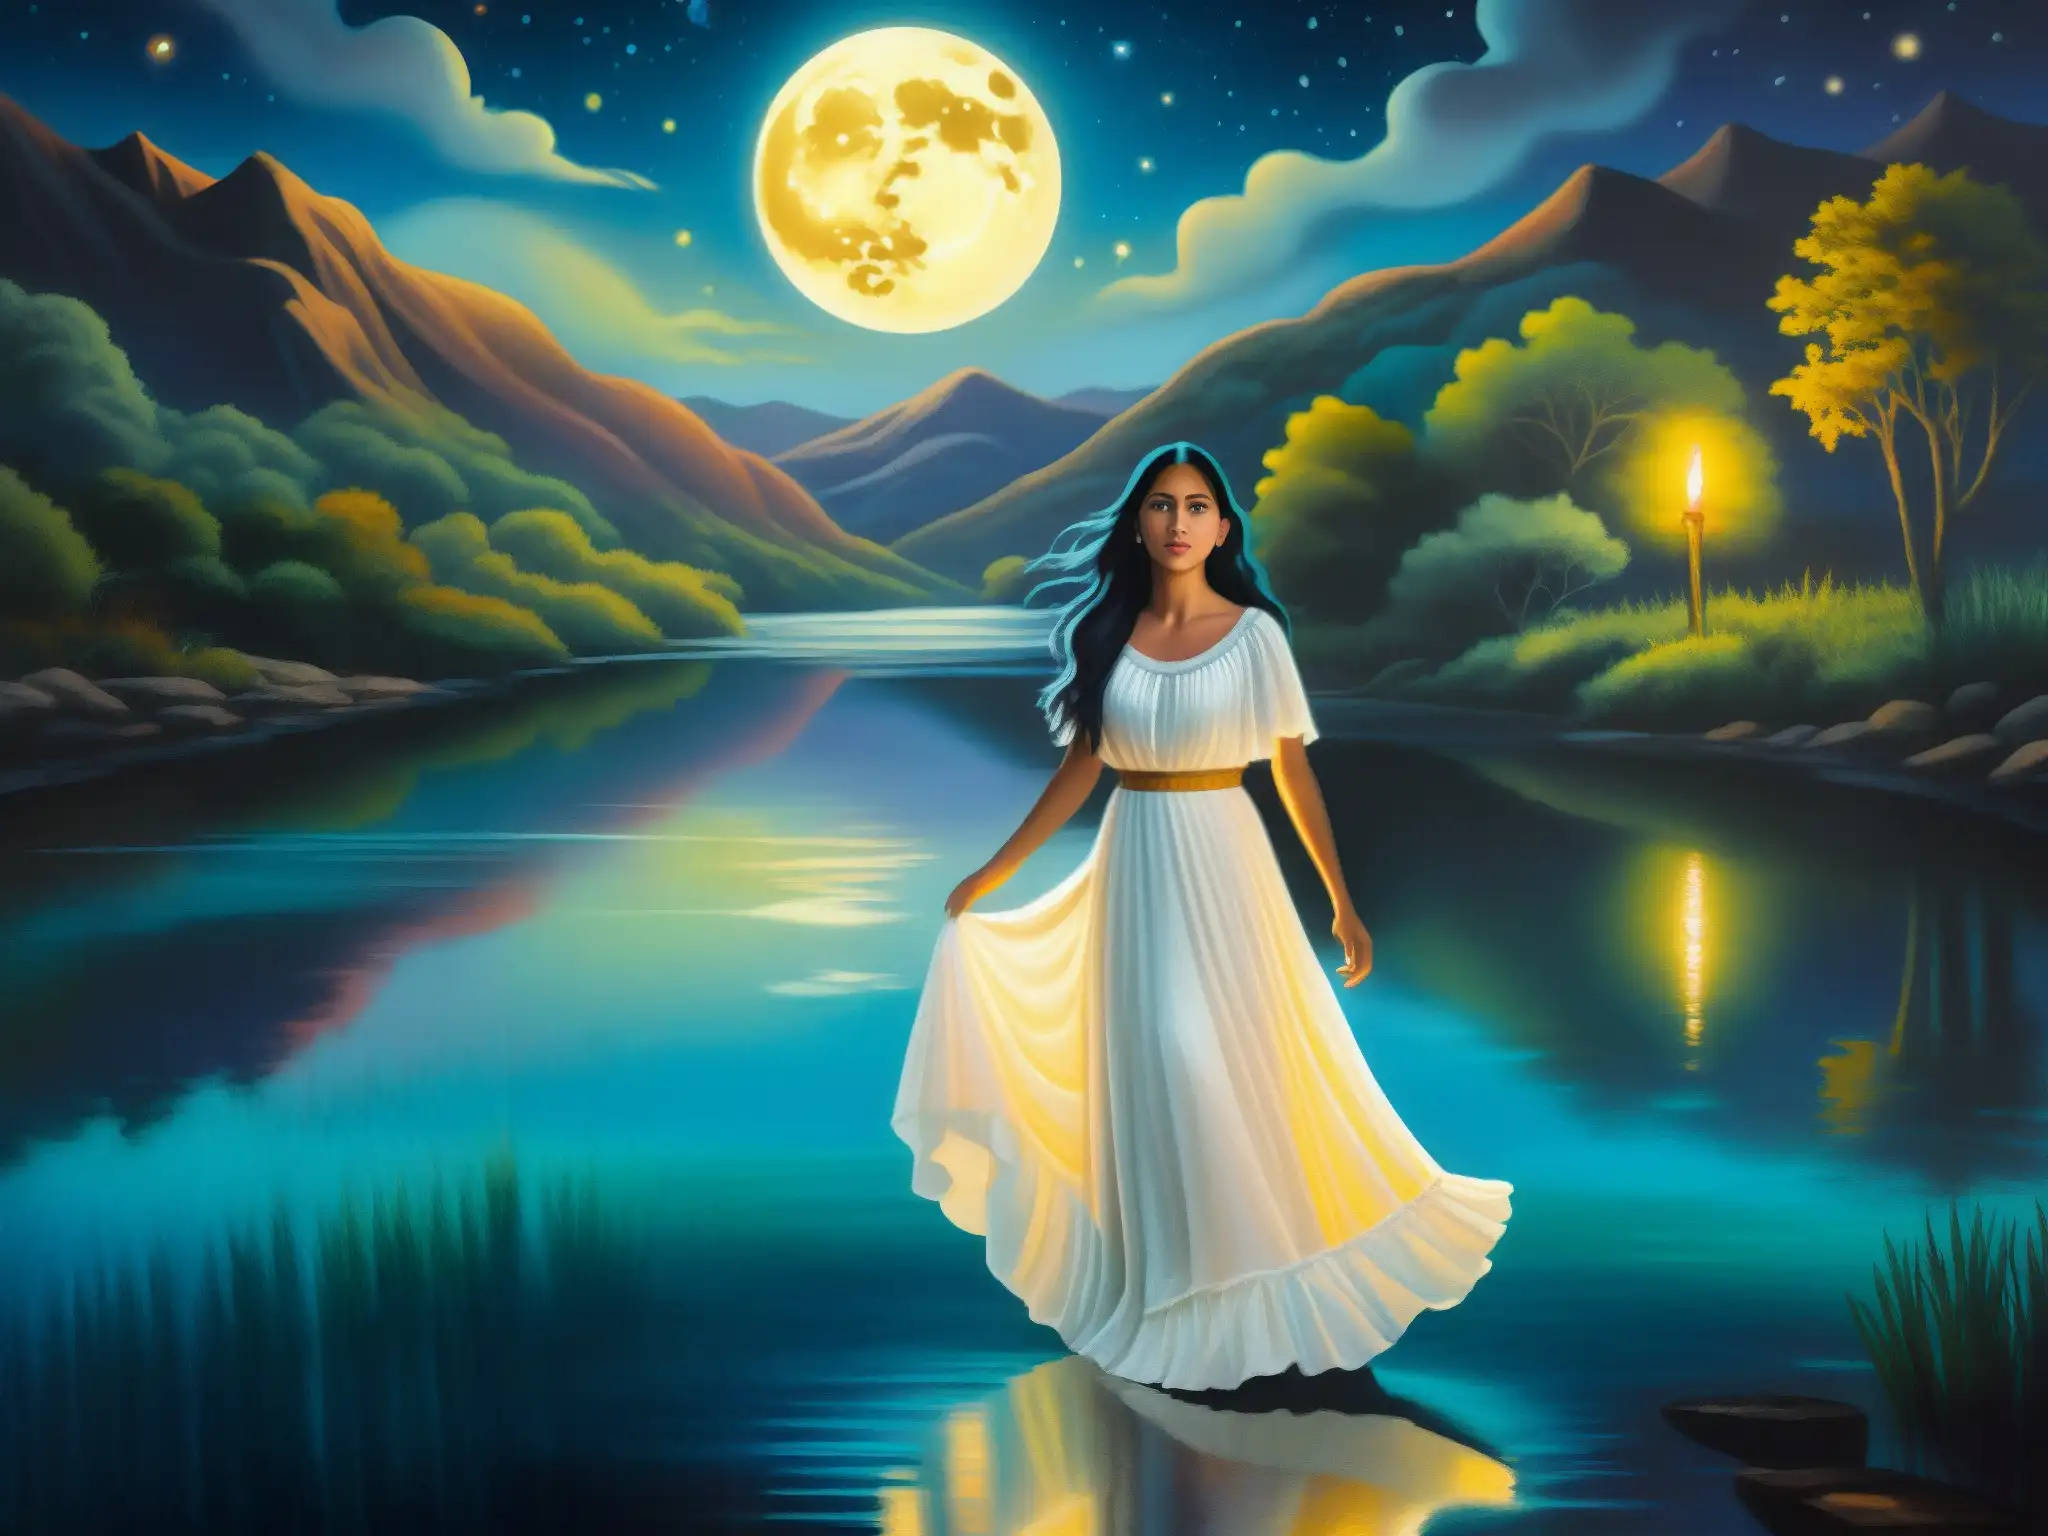 Una pintura mural impactante de La Llorona, con su vestido blanco ondeando mientras camina junto a un río iluminado por la luna